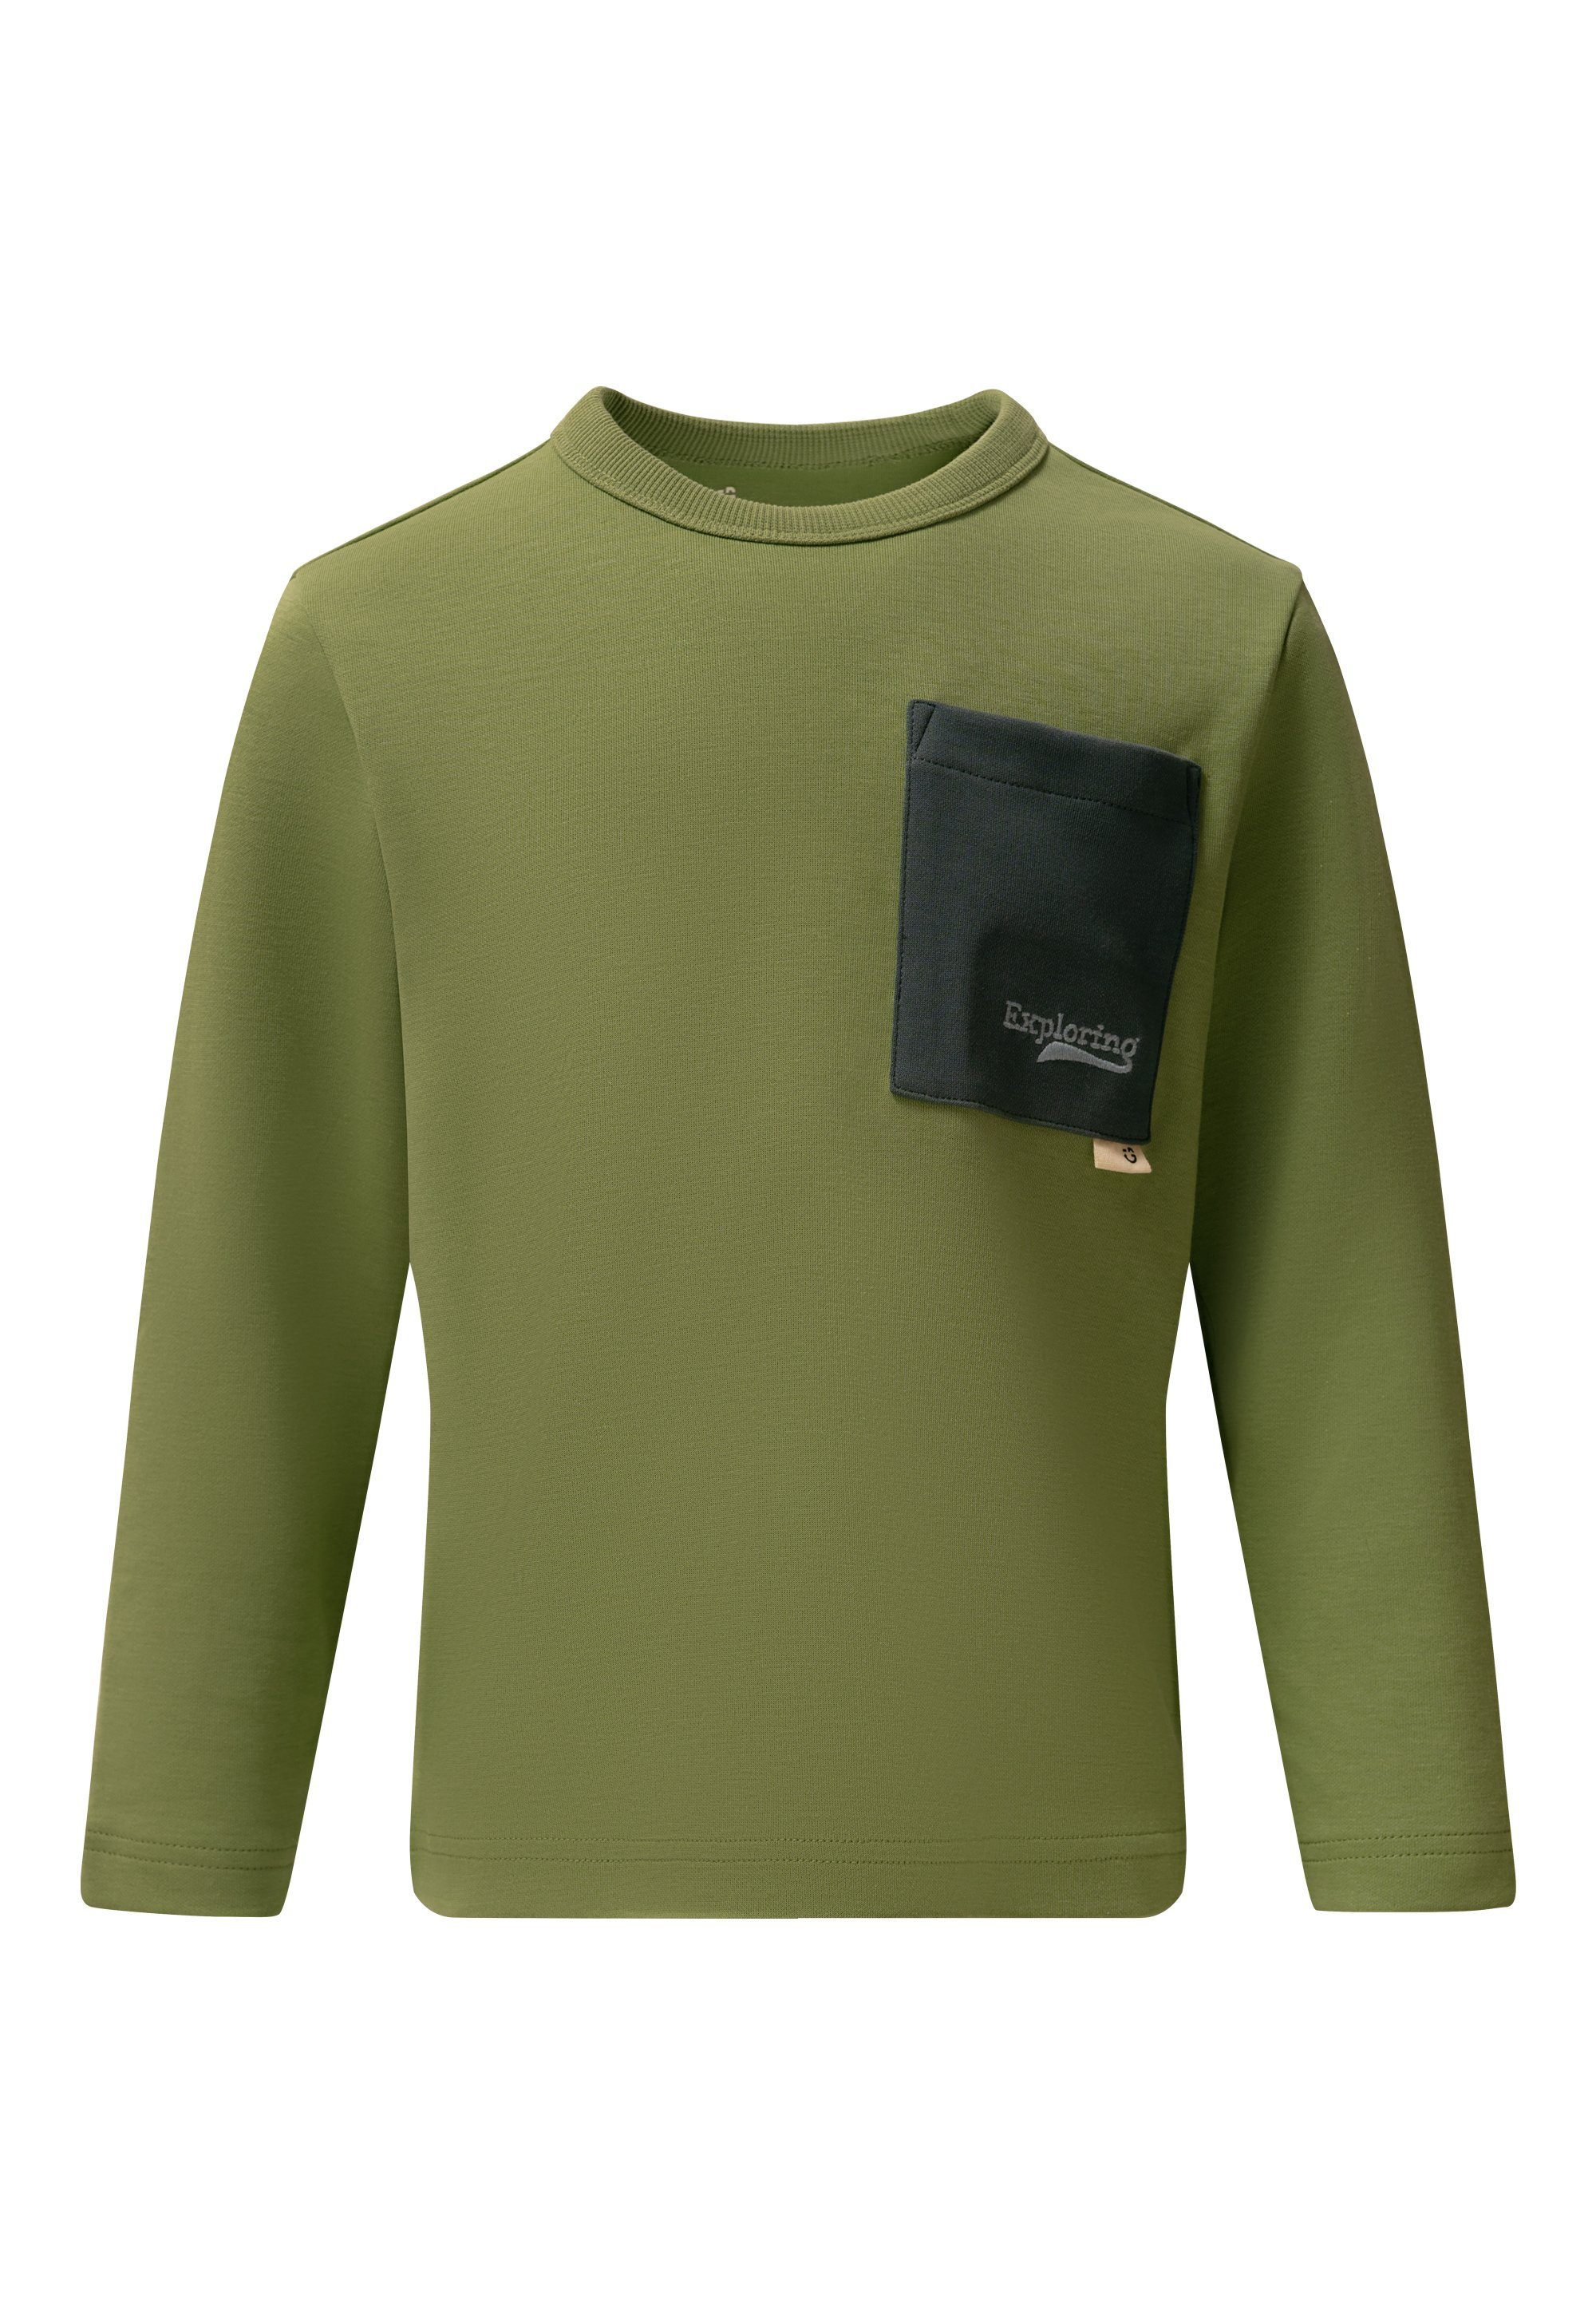 GIORDANO junior Langarmshirt mit stylischer Kontrast-Tasche grün